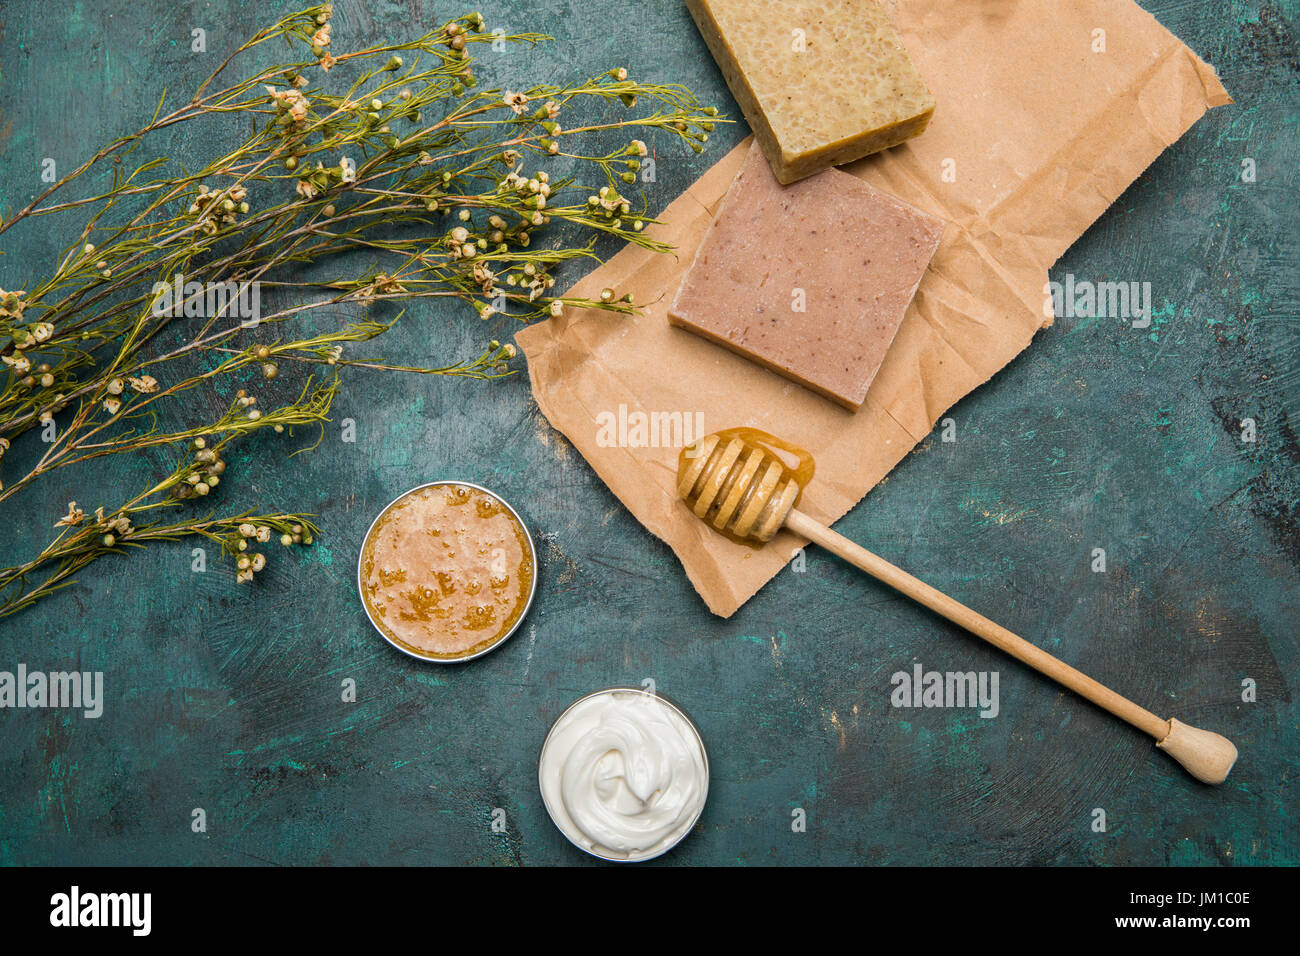 Vue rapprochée de savon artisanal, de miel, de fleurs séchées et de crème pour les soins de beauté Banque D'Images